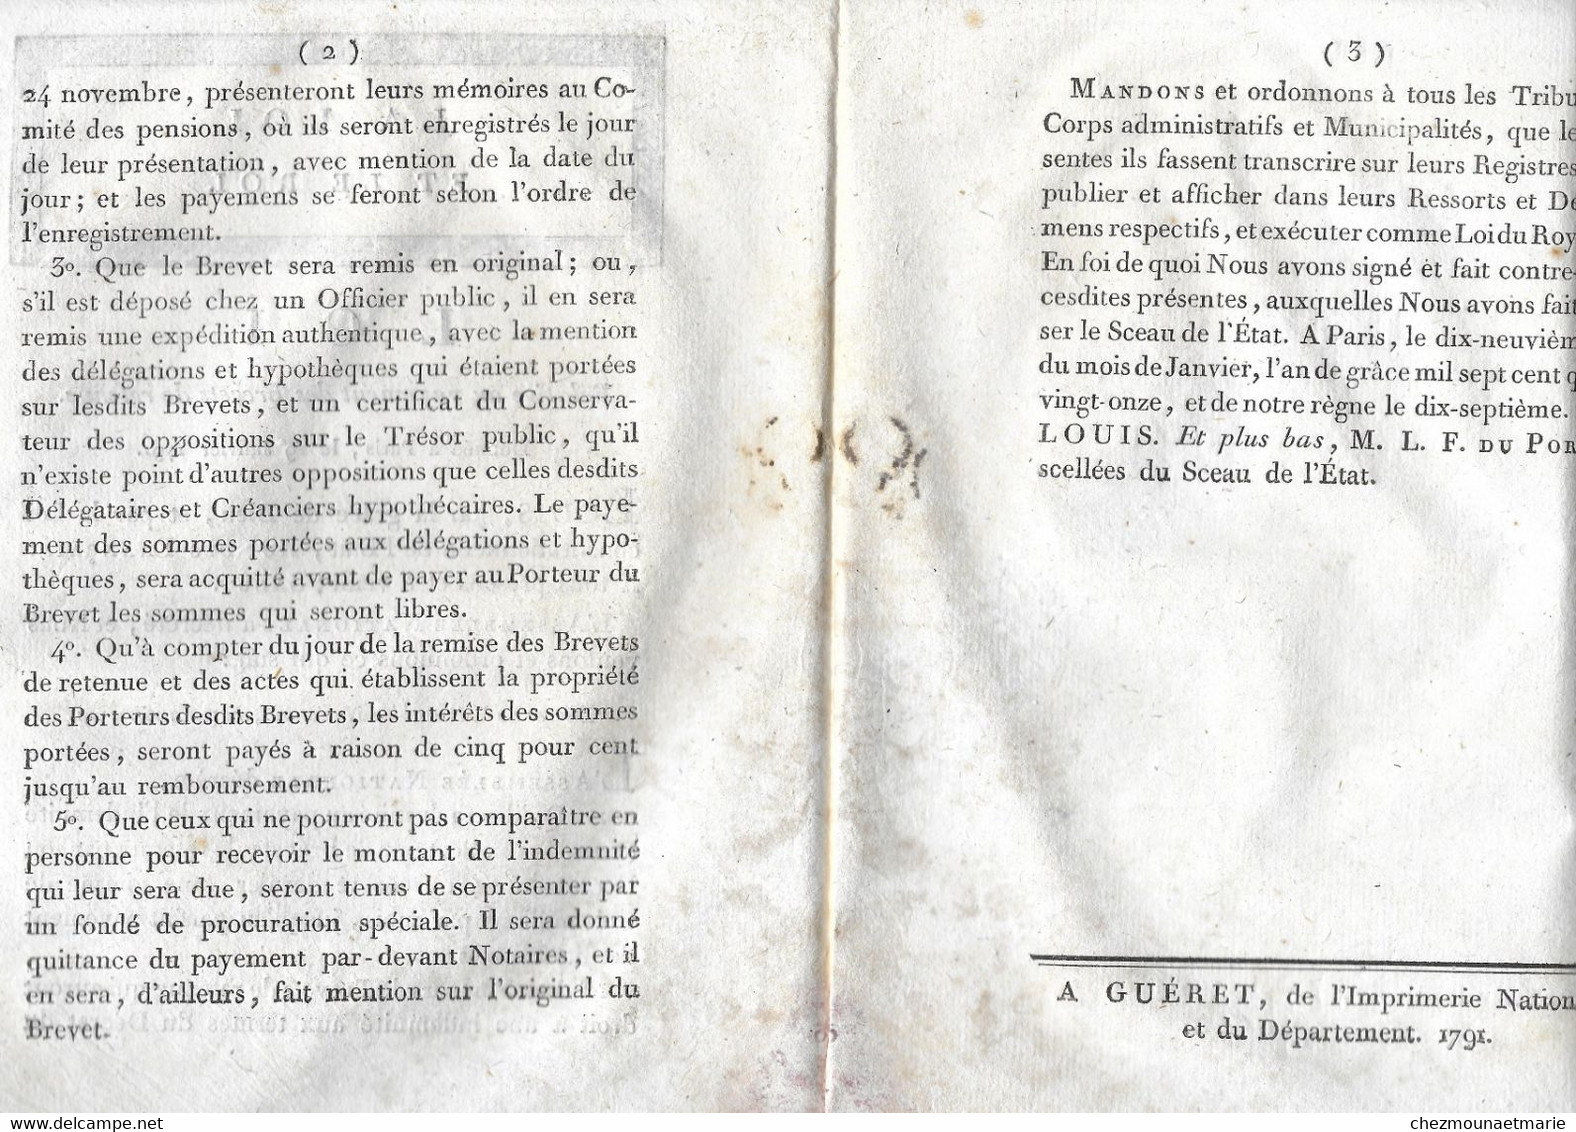 1791 LA LOI ET LE ROI N°405 PAIEMENT BREVETS DE RETENUE - Décrets & Lois